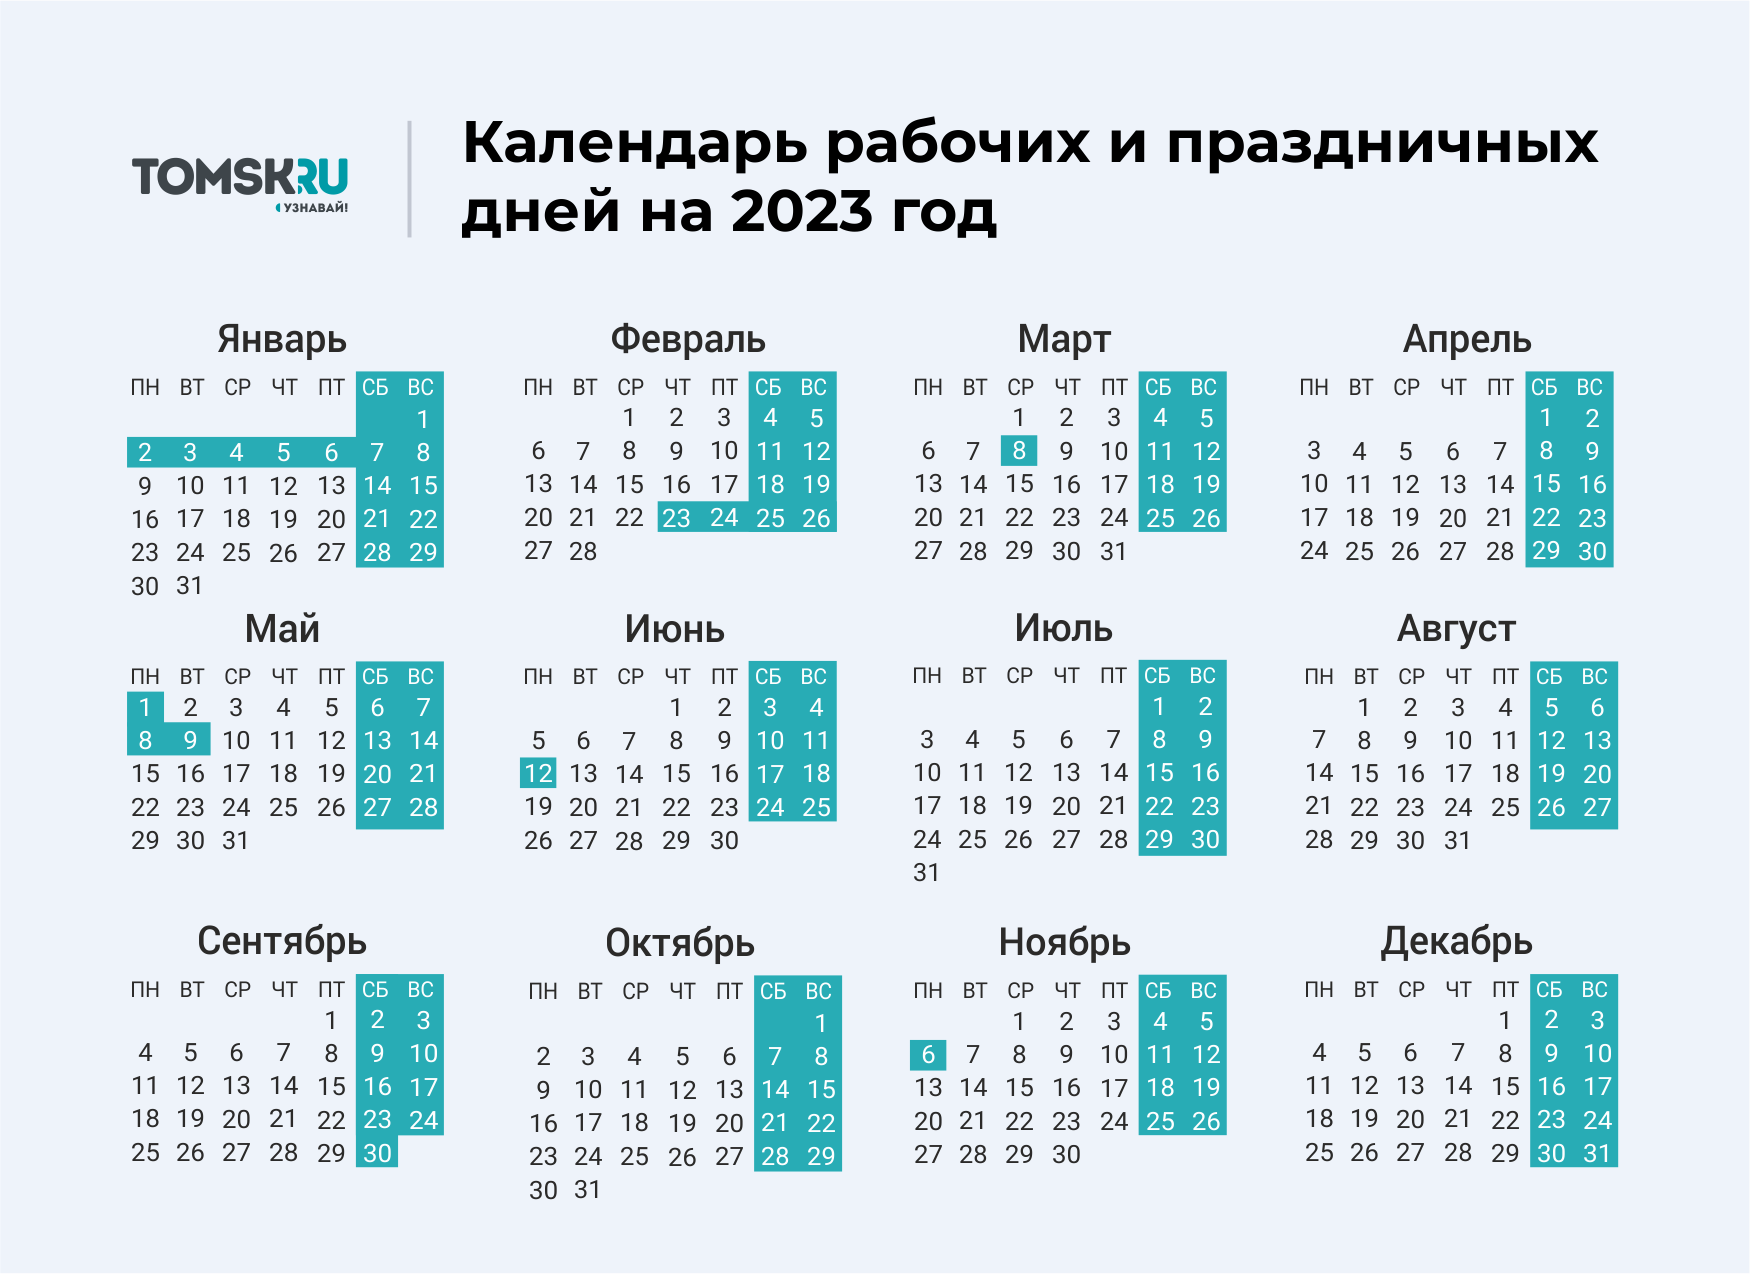 Выходные дни в 2023 году в России календарь. Календарь выходных и праздничных дней на 2023 год в России. Календарь праздничных выходеыхв 2023 году. Календарь на 2023 год с праздниками и выходными выходные снизу.